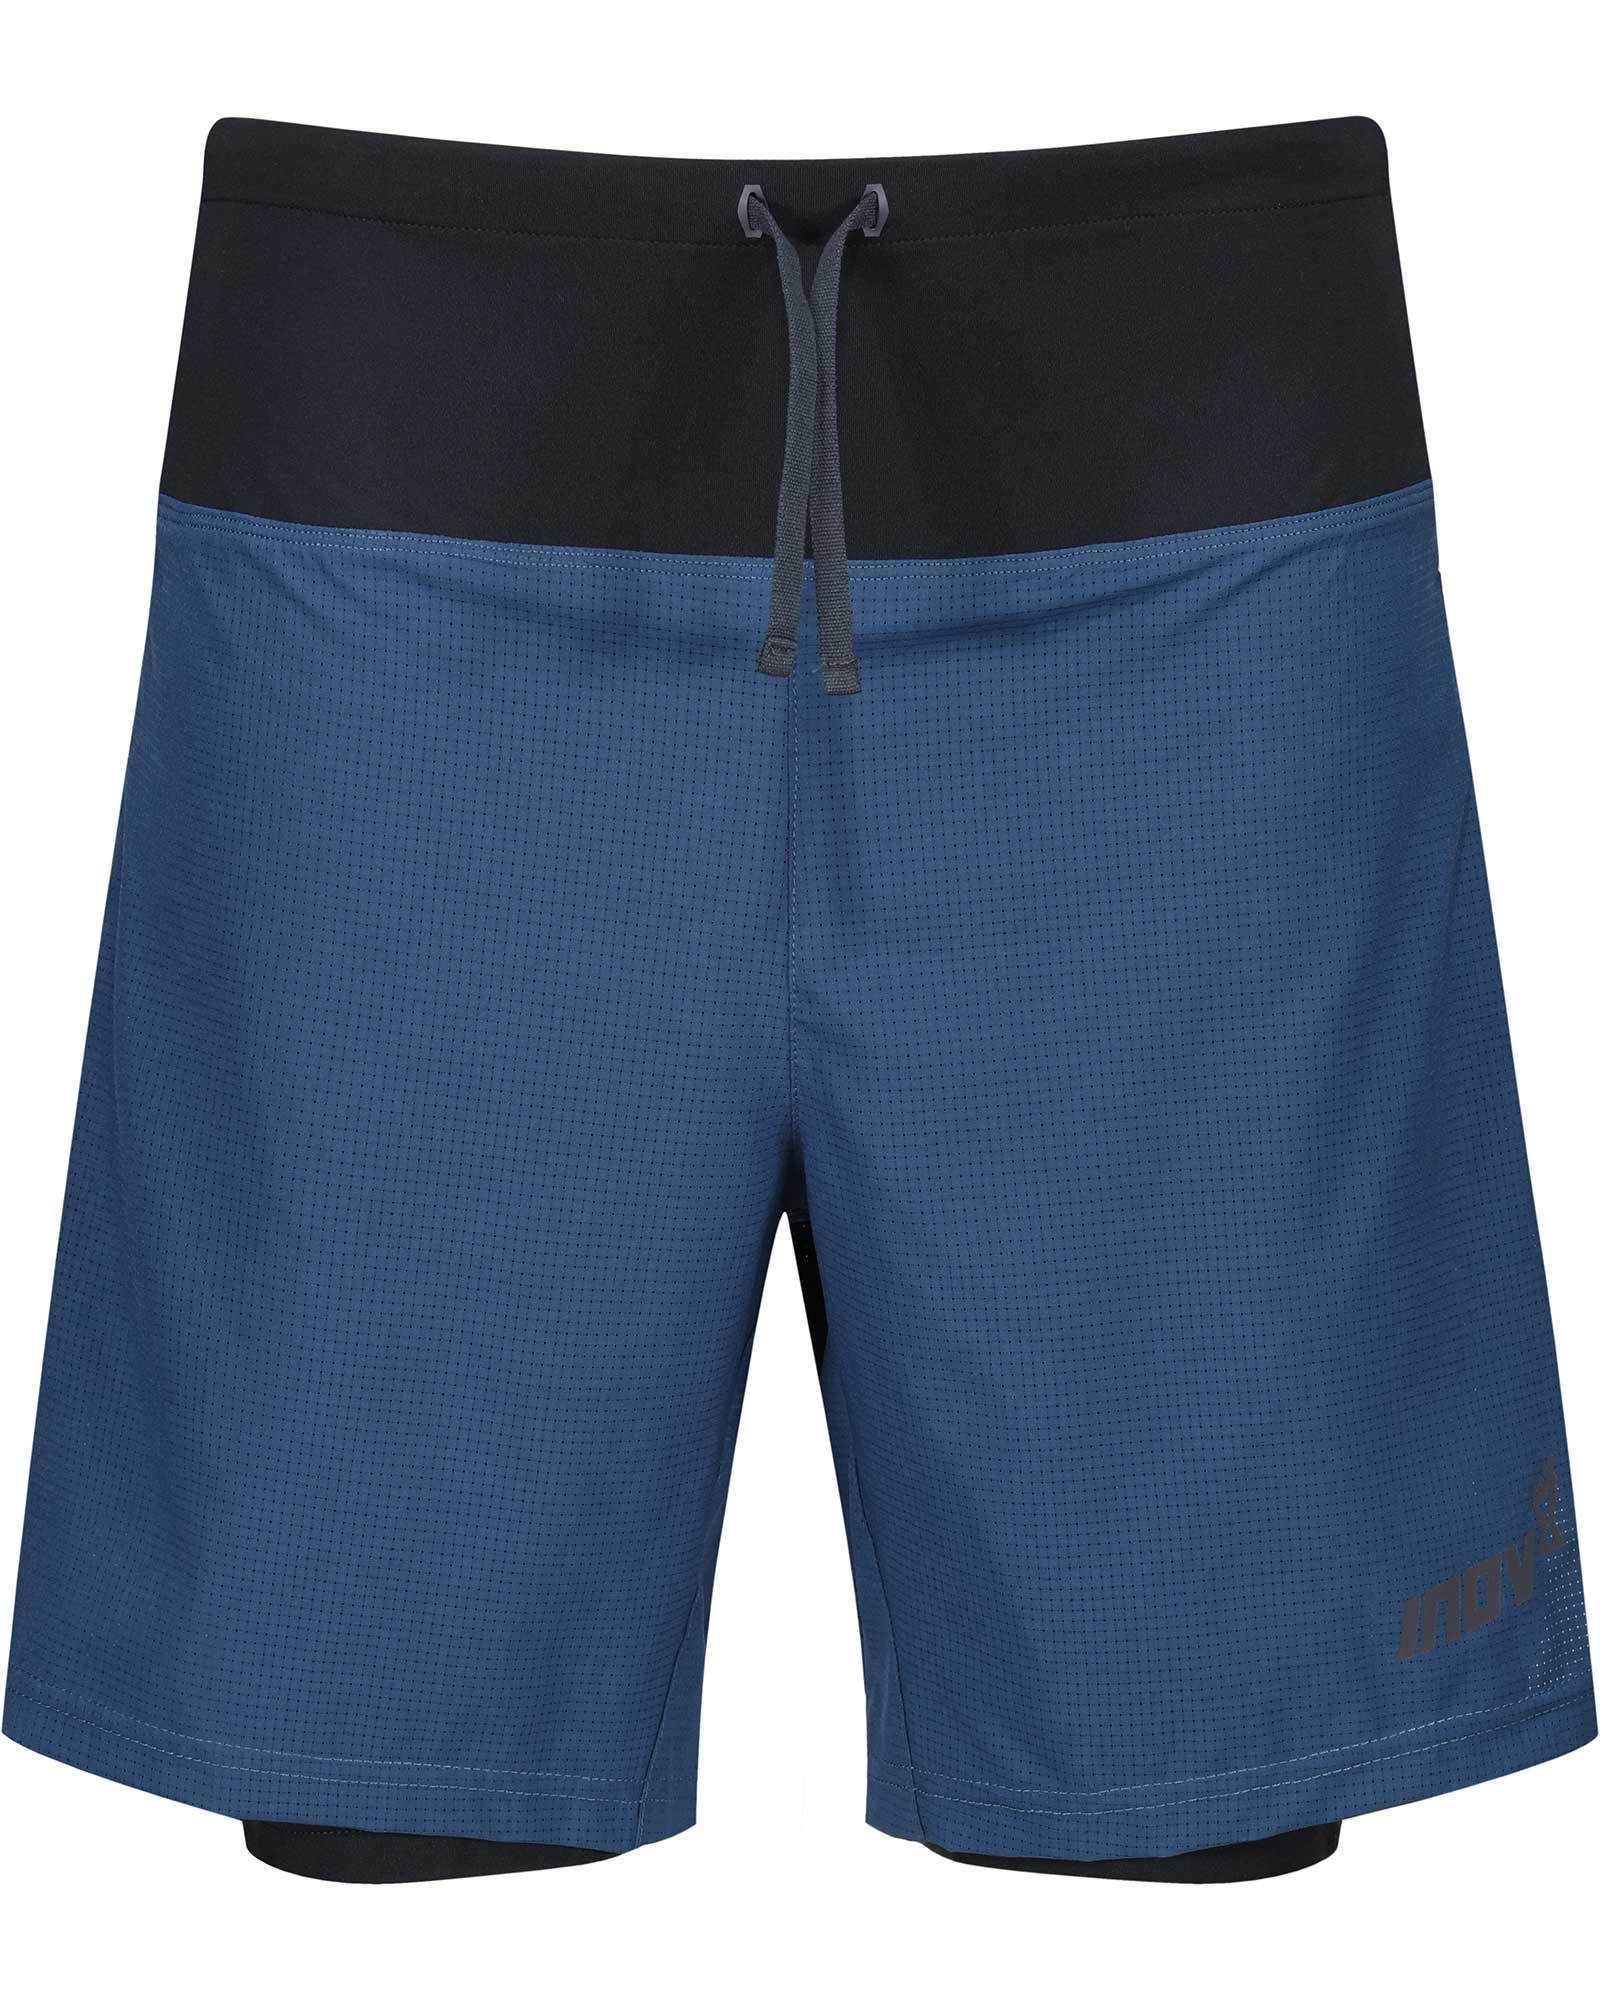 Inov 8 TrailFly Ultra Men’s 7" 2in1 Shorts - Navy M